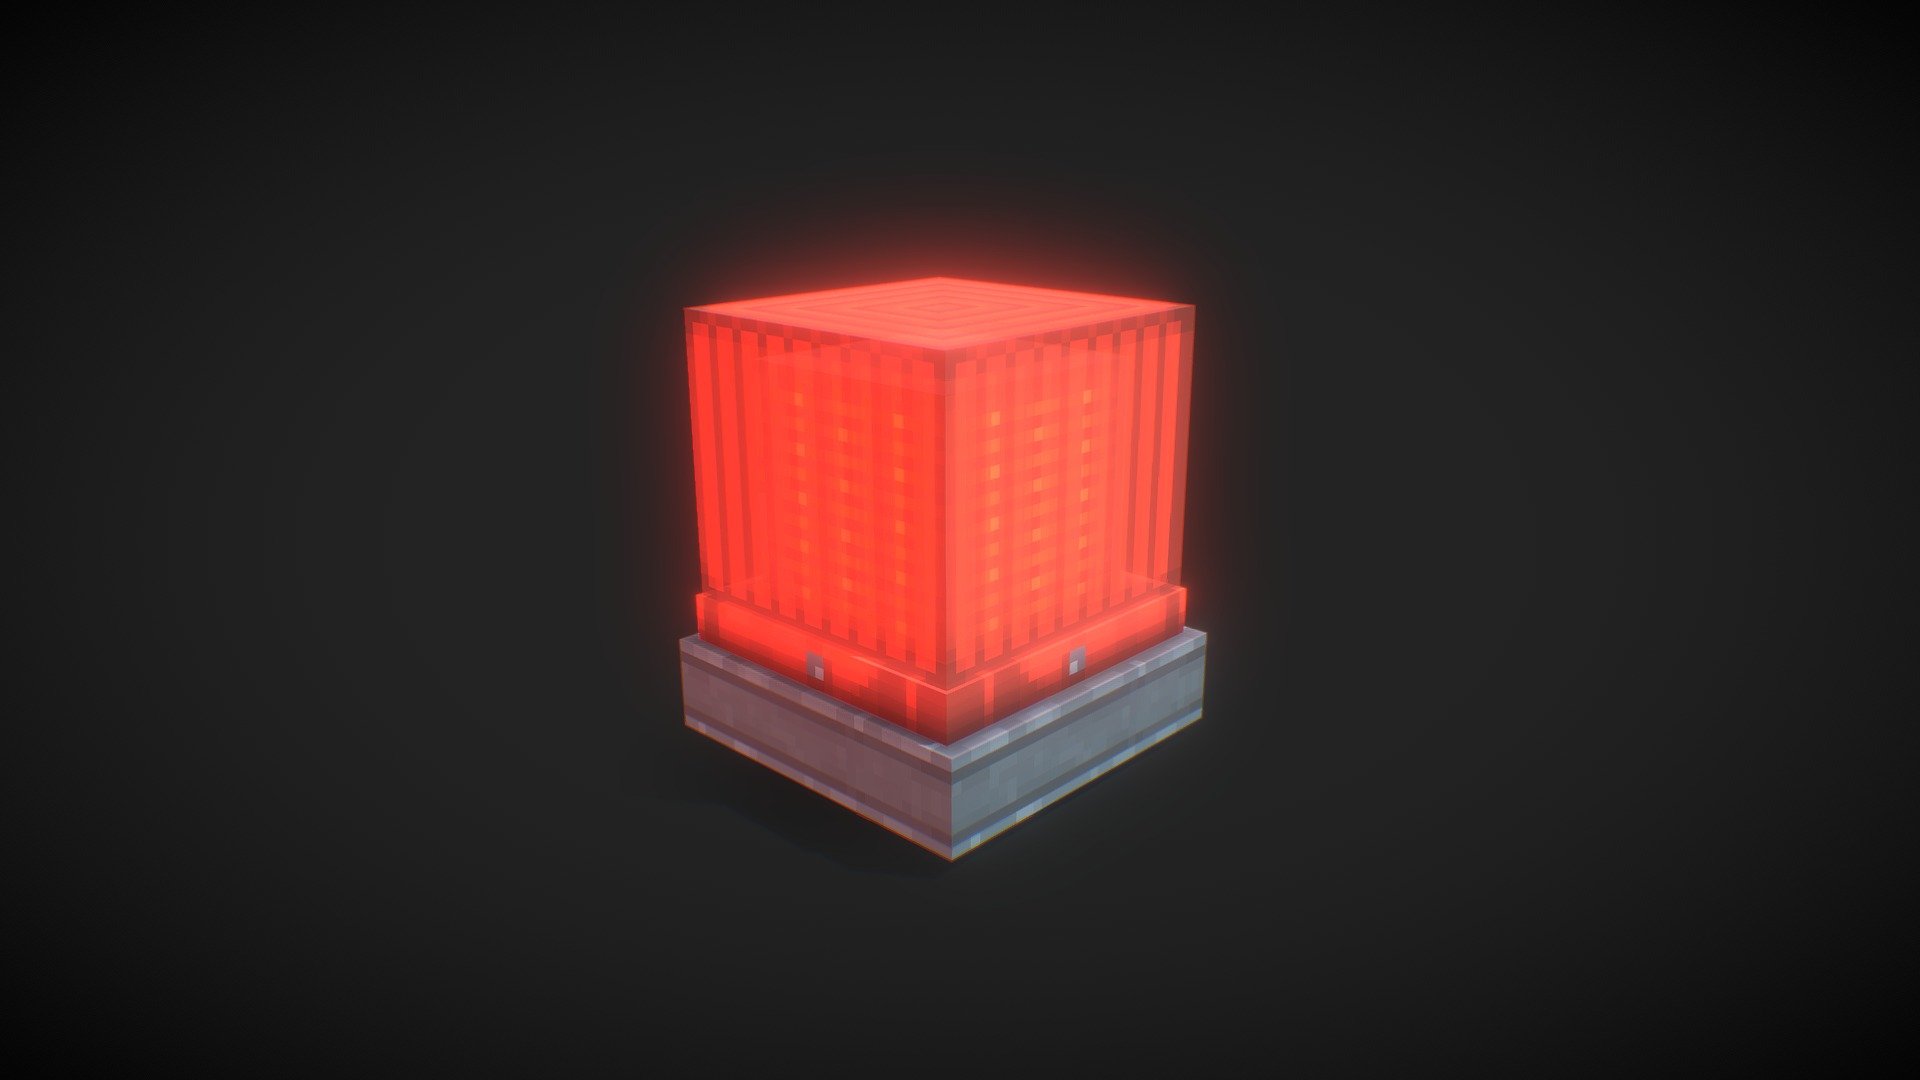 Alarm Light - Blockbench - 3D model by Best_Long (@best.v.long) 3d model